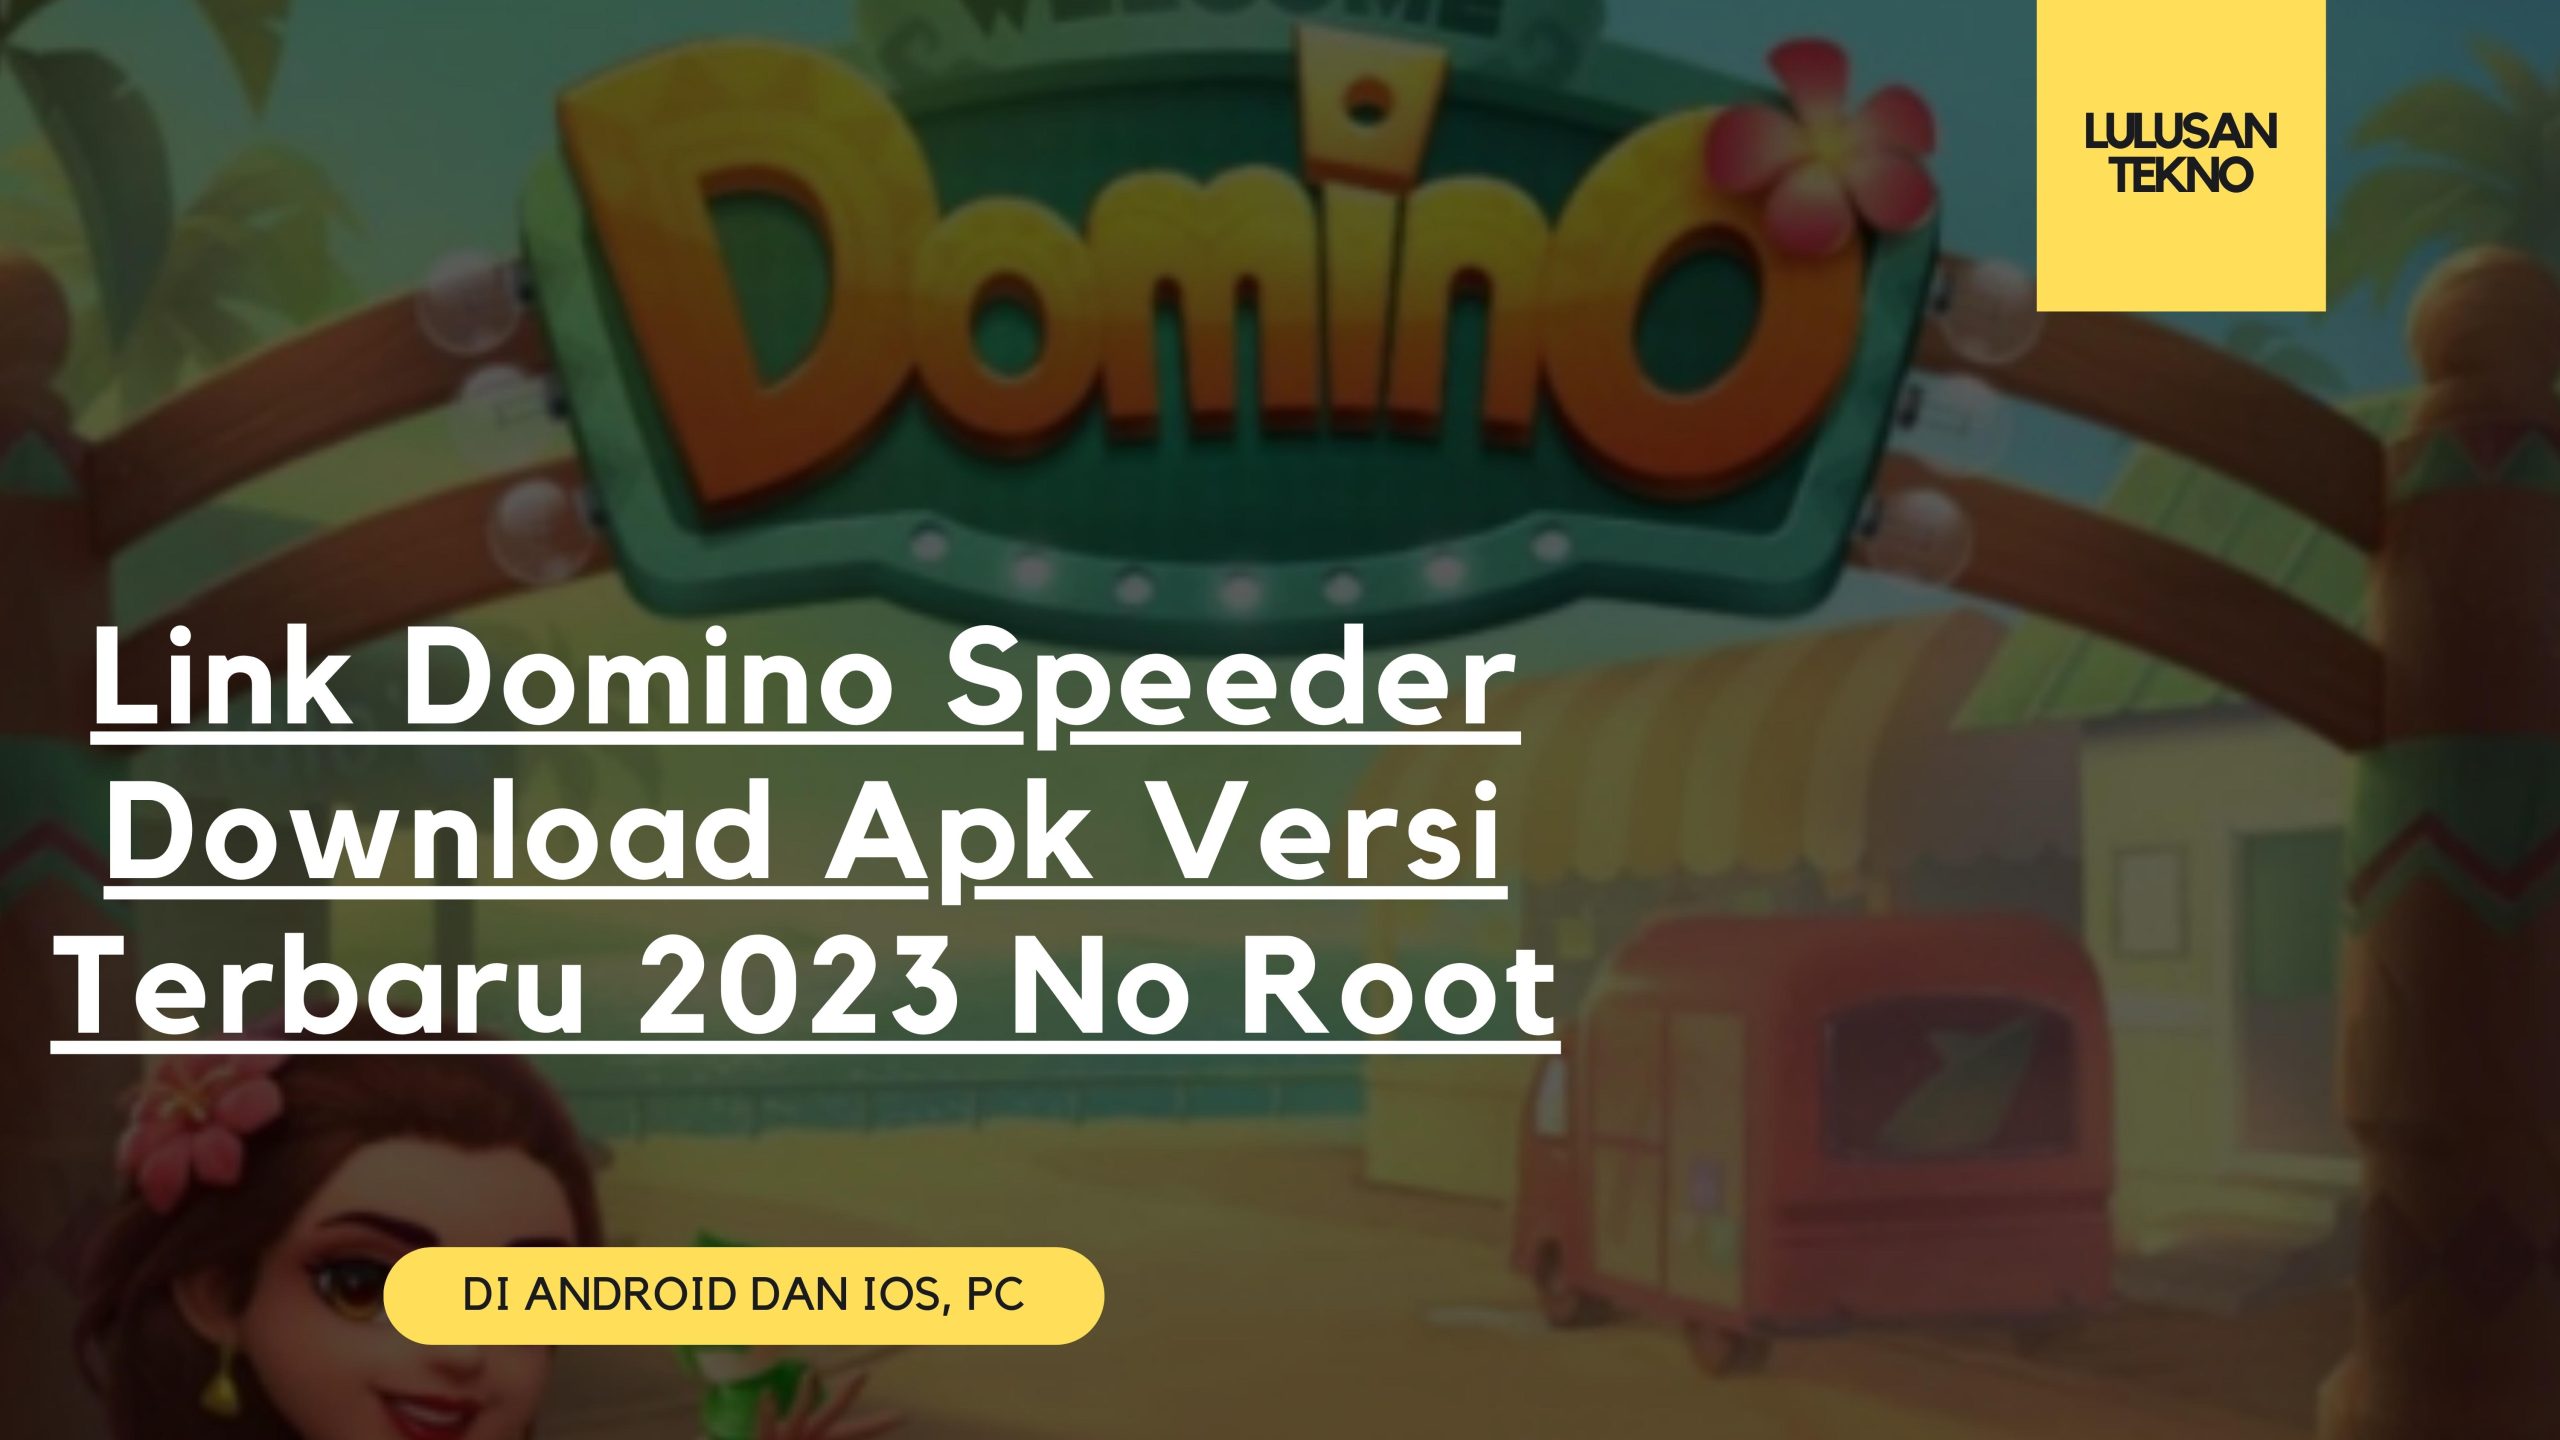 Link Domino Speeder Download Apk Versi Terbaru 2023 No Root